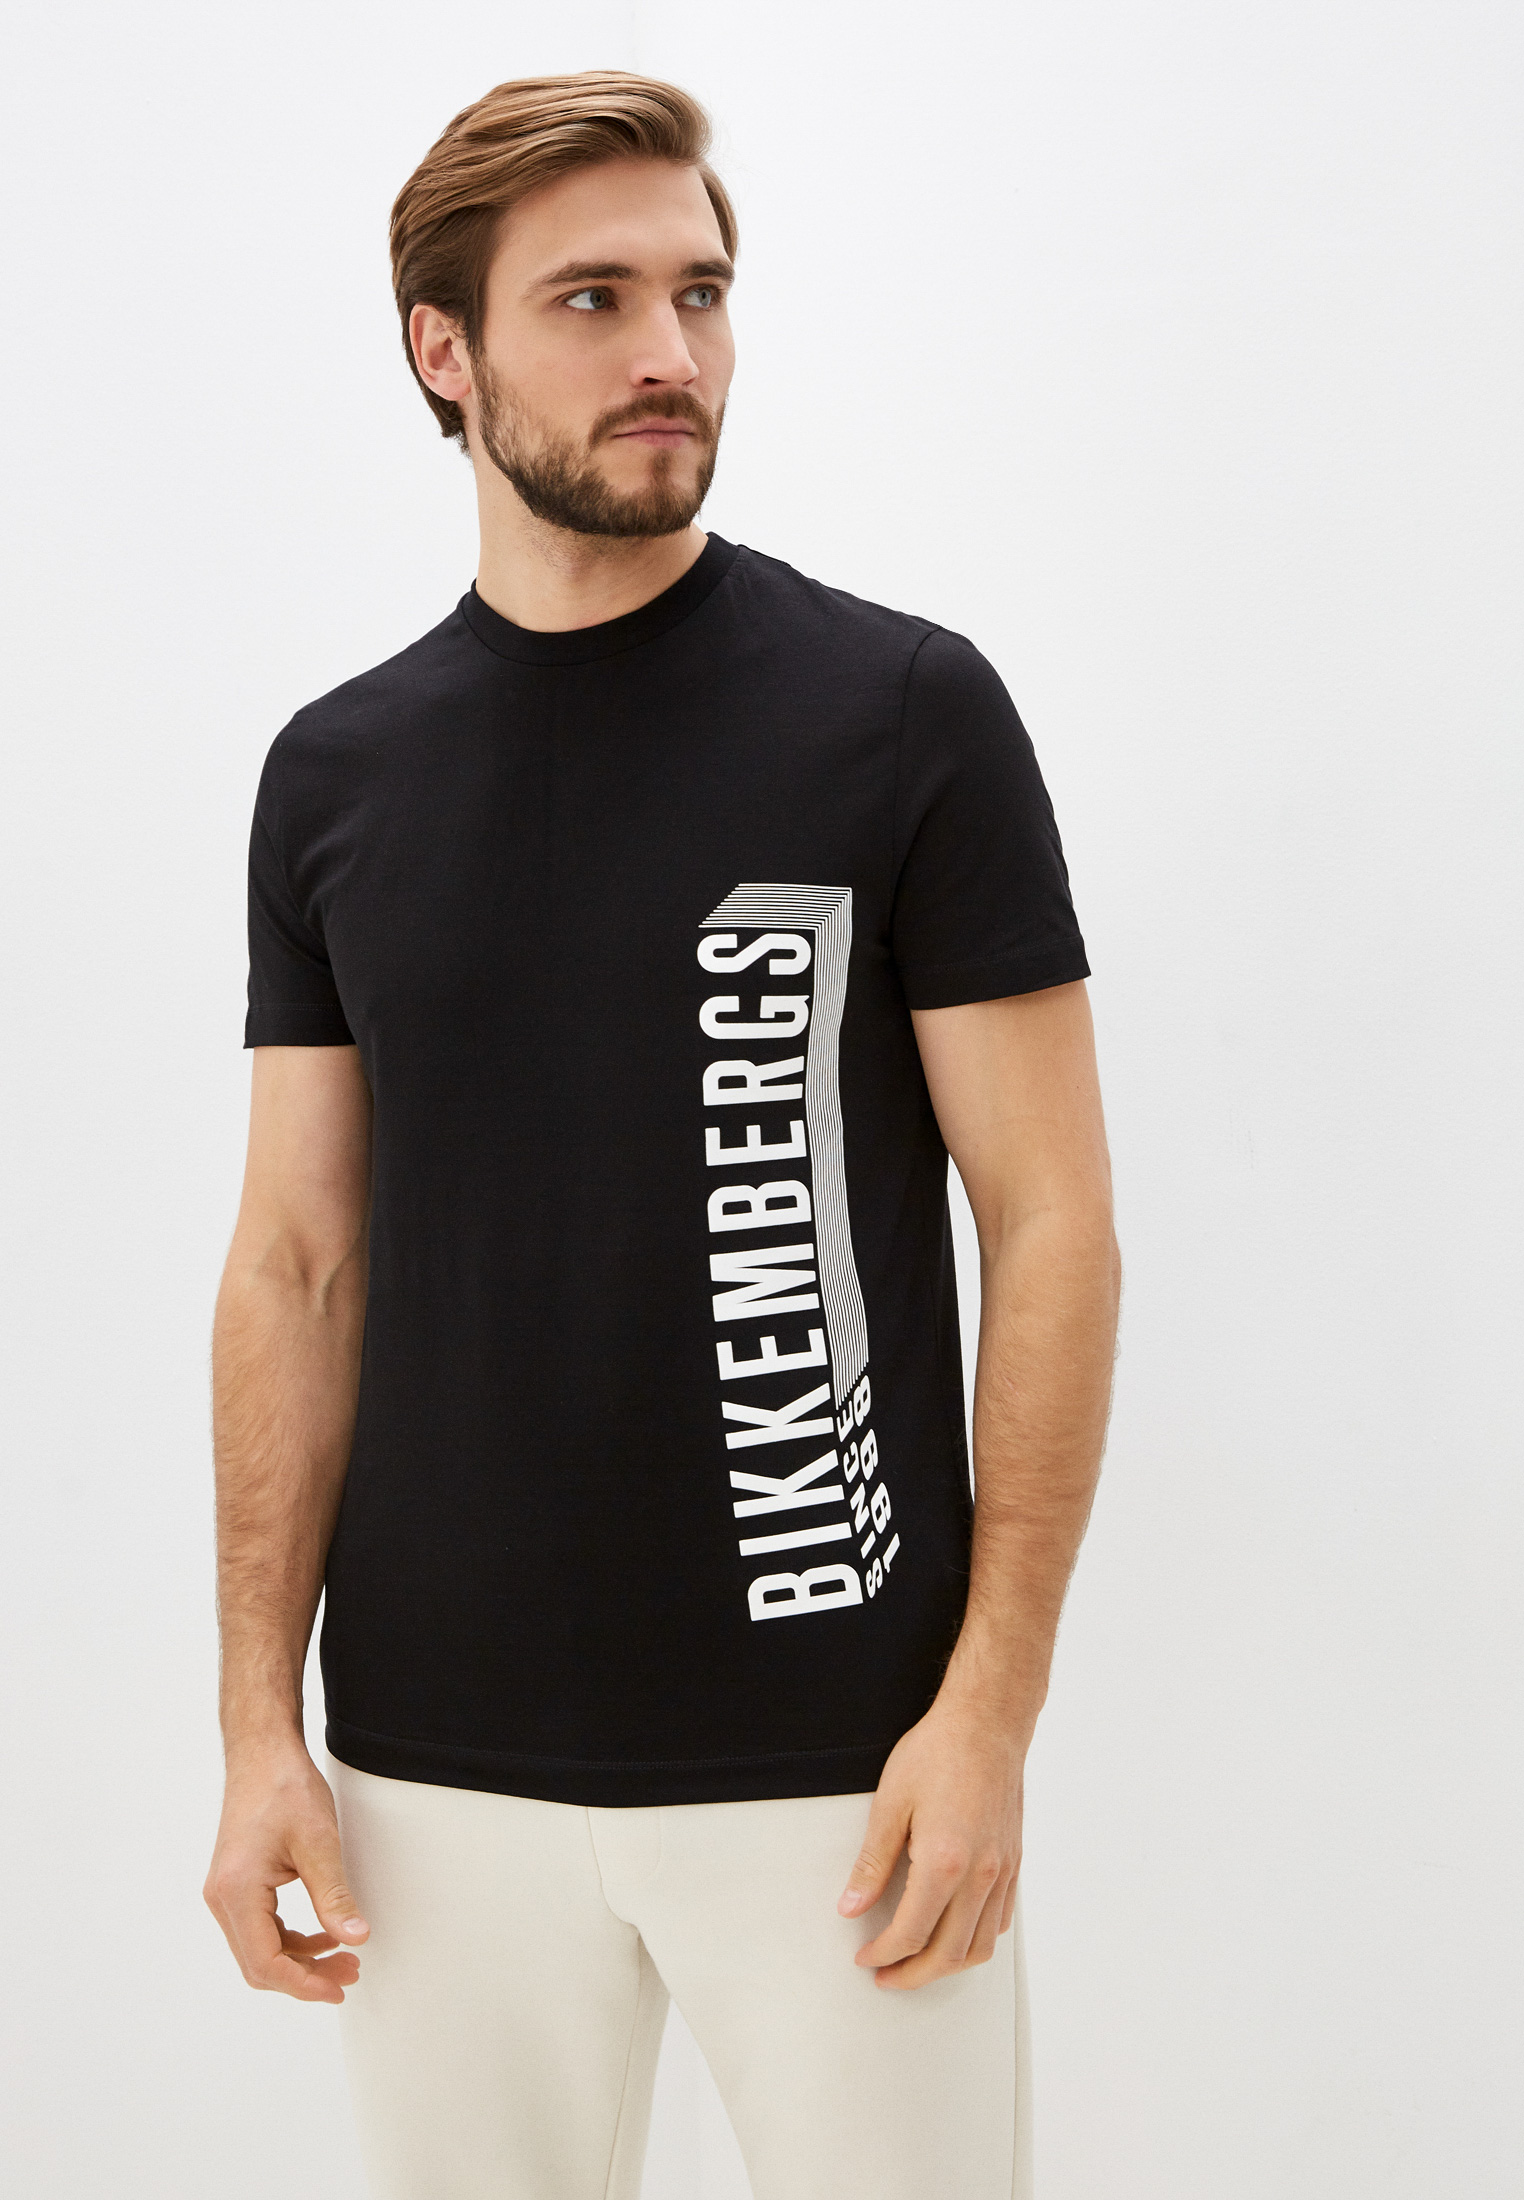 Мужская футболка Bikkembergs (Биккембергс) C 4 101 47 E 2296: изображение 1